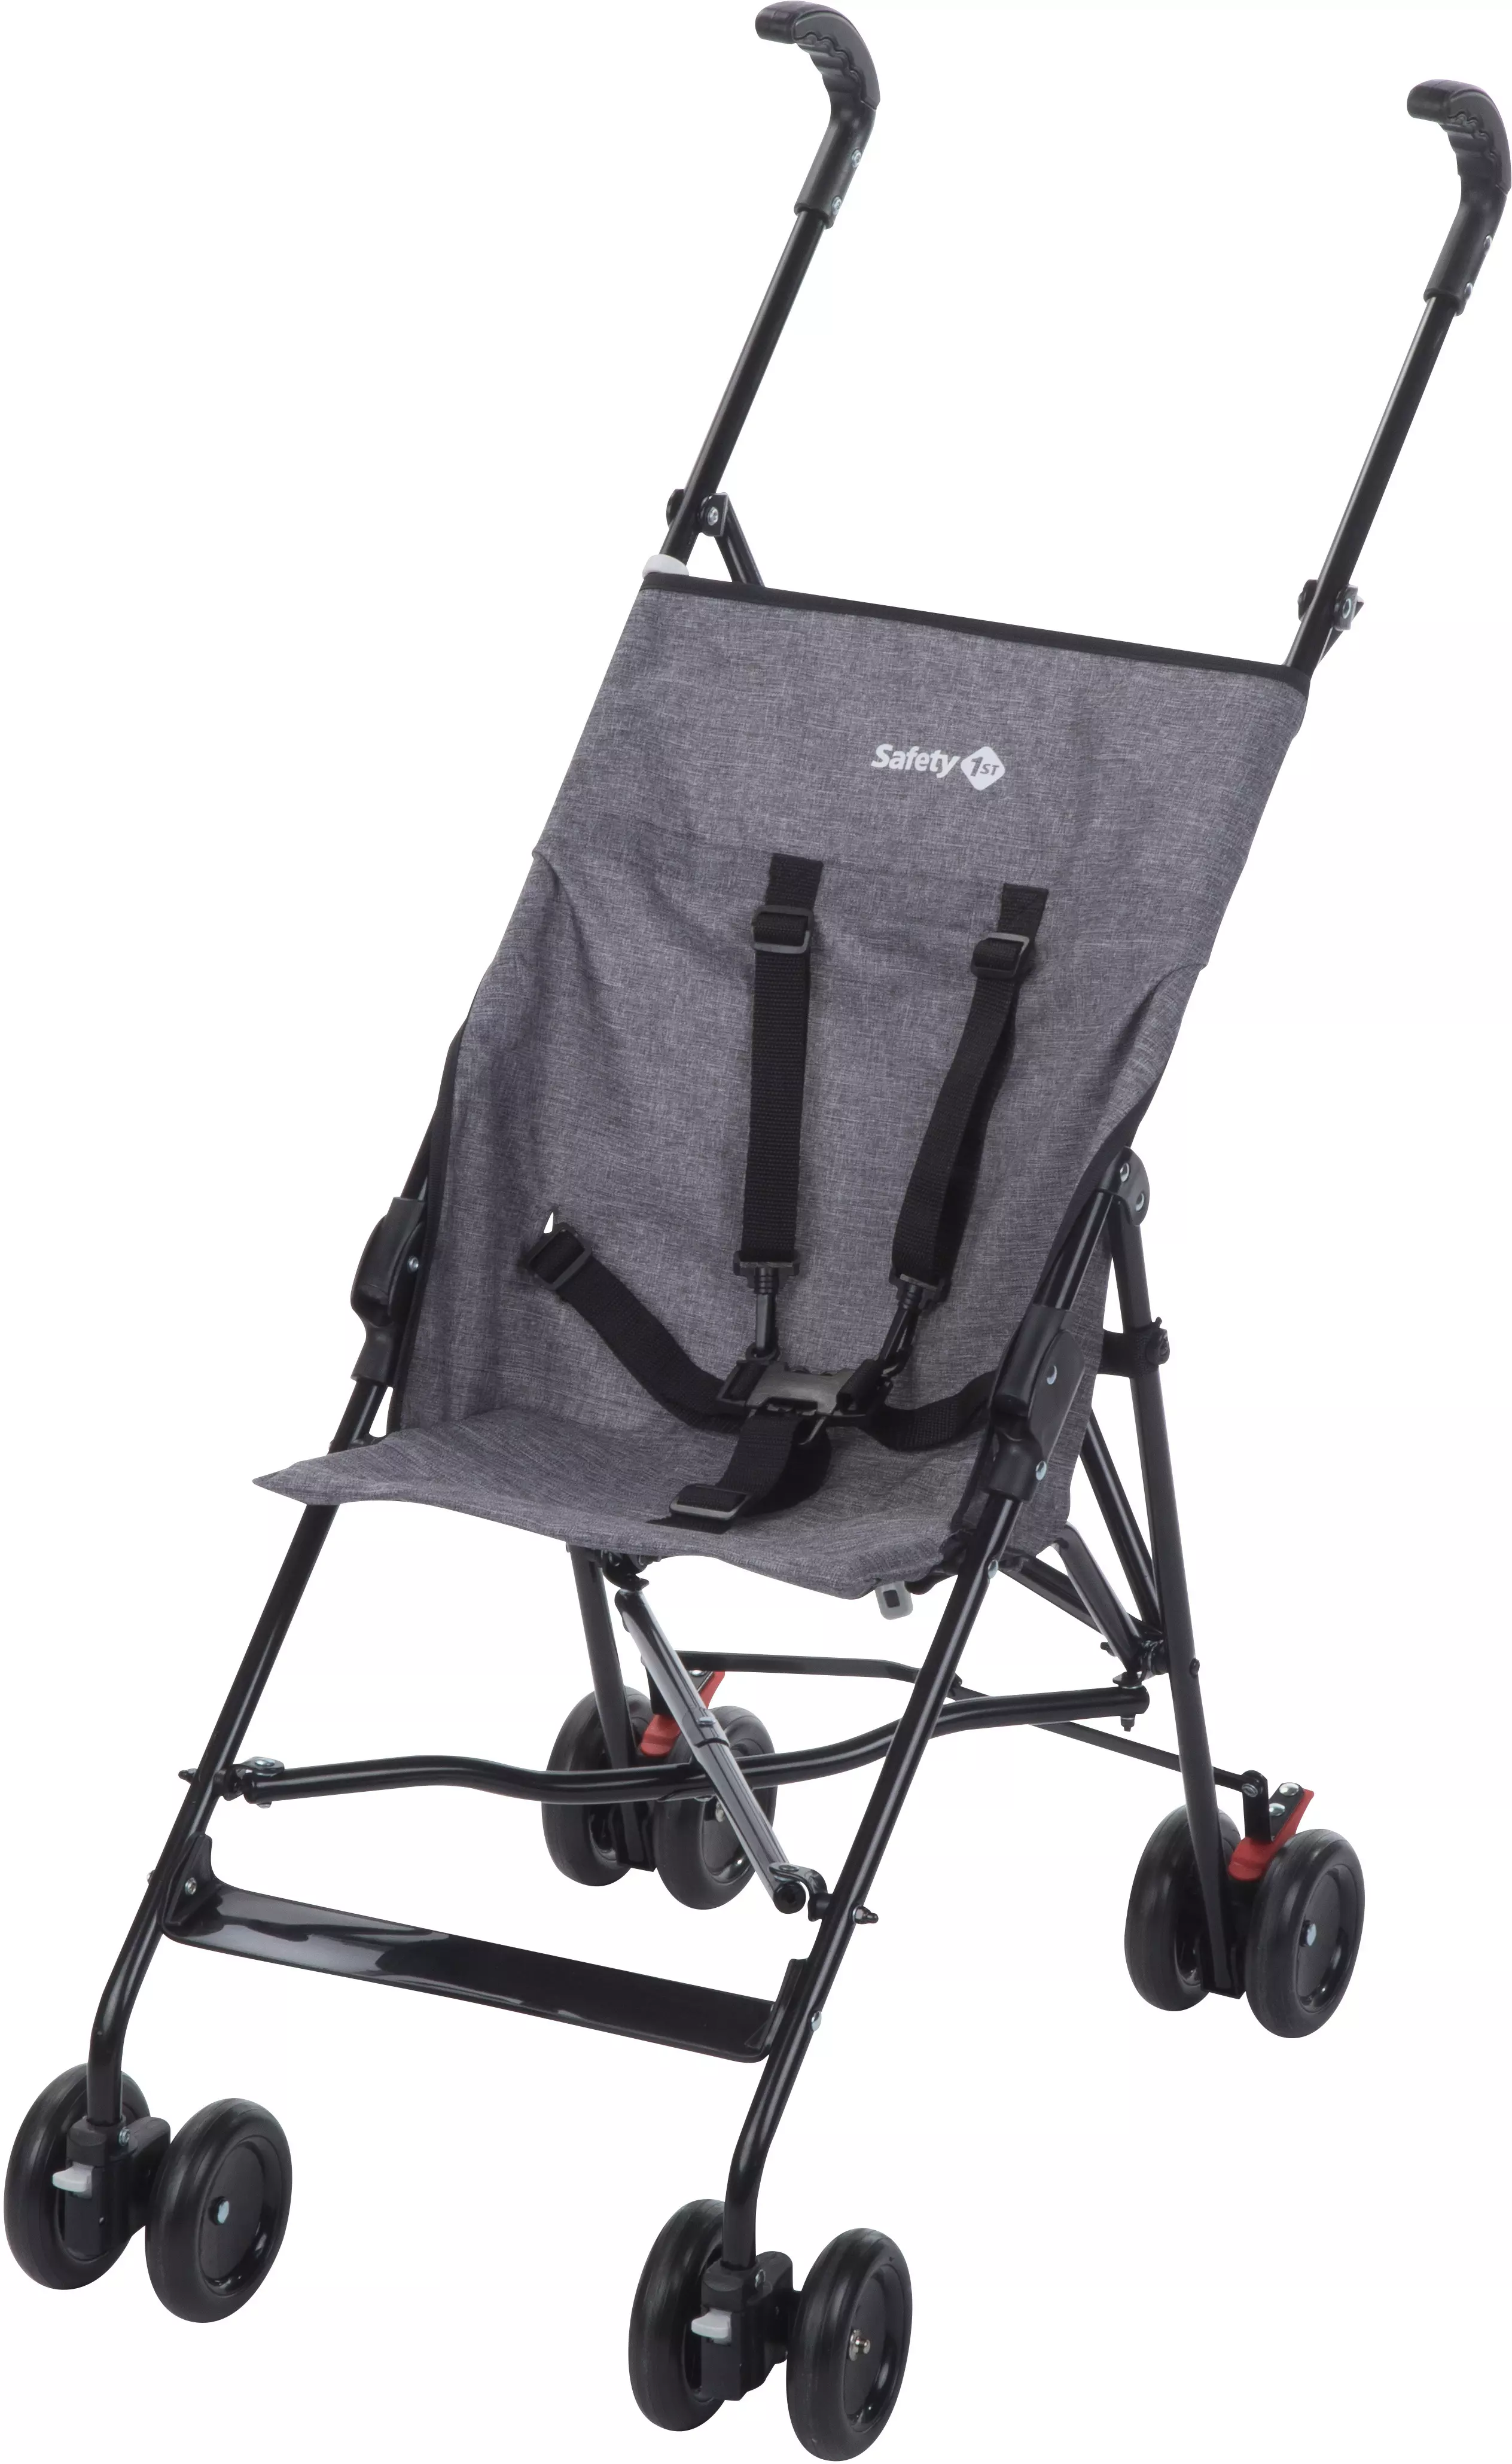 safety first lightweight stroller